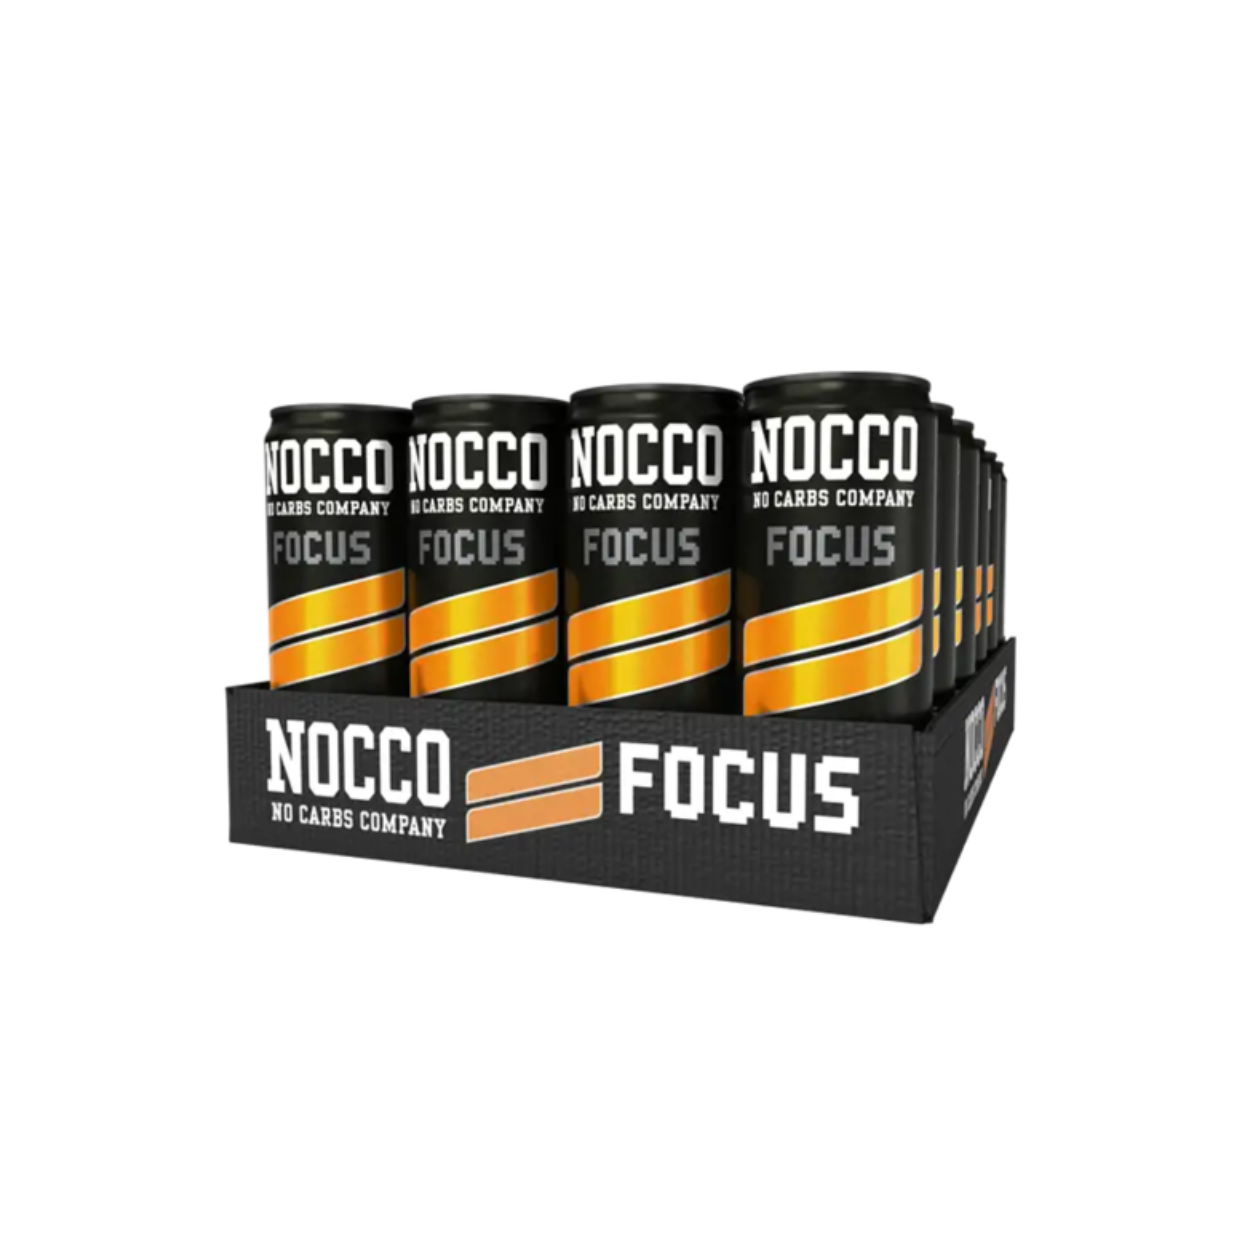 Nocco Focus Black Orange Dose (1-24x330ml)